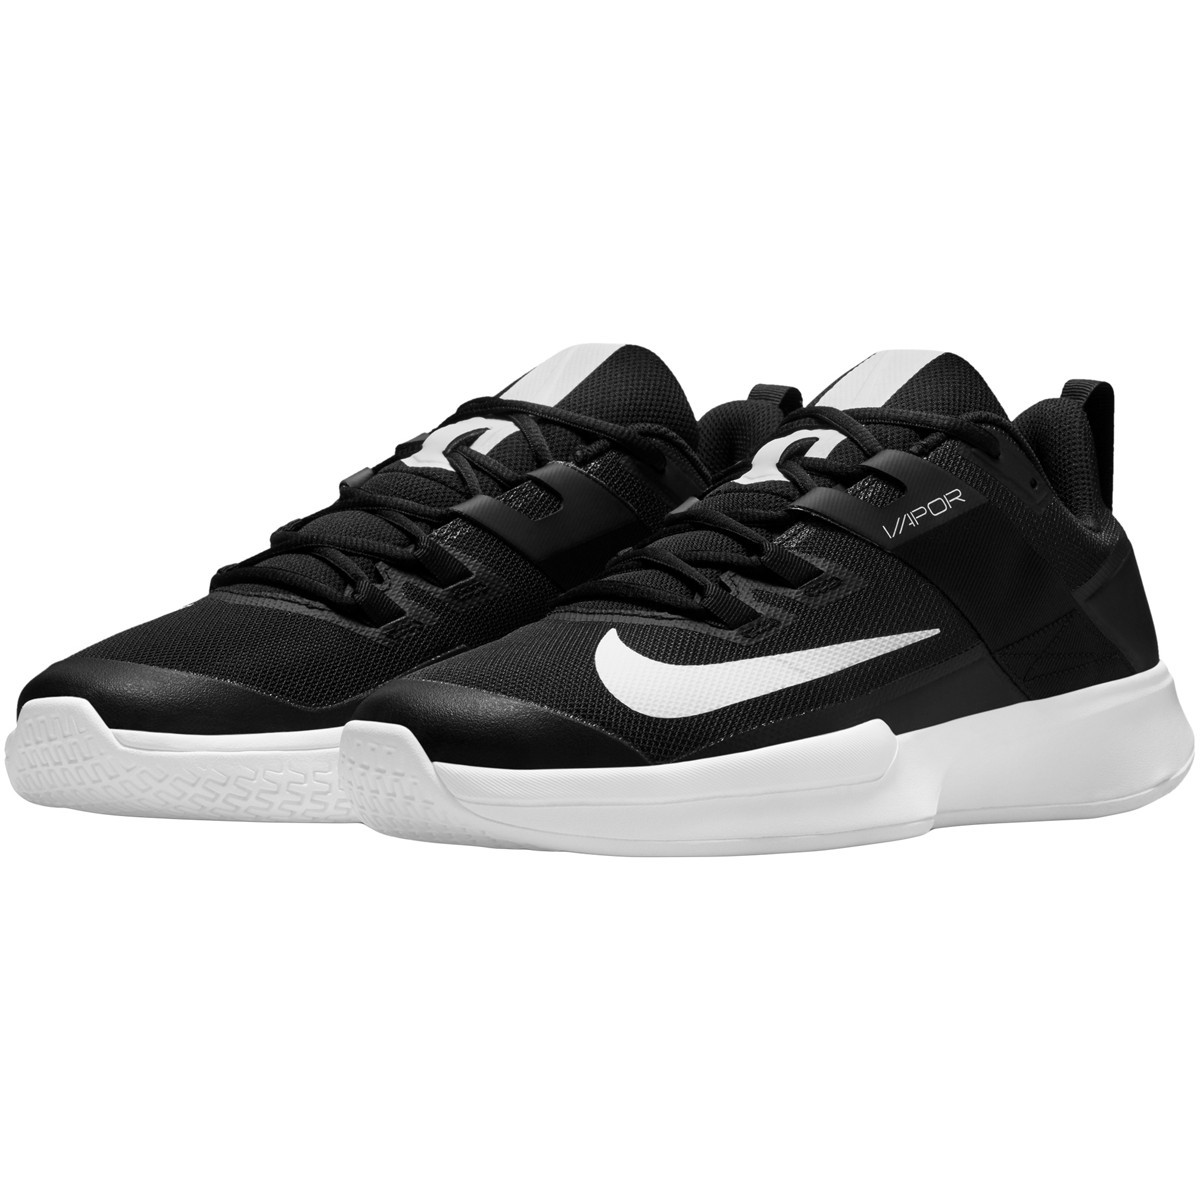 Теннисные кроссовки мужские Nike Court Vapor Lite black/white